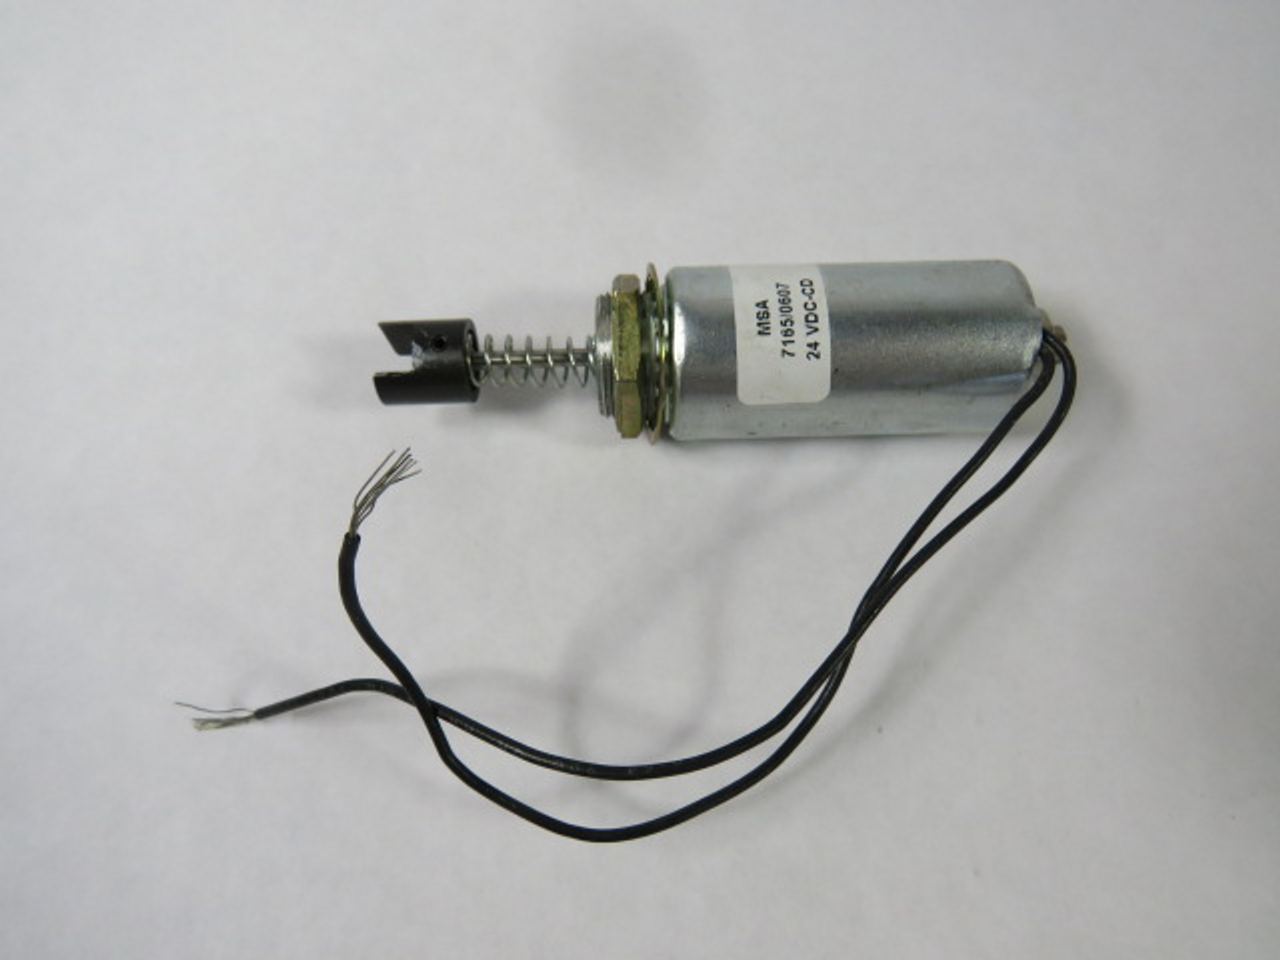 MSA 7165/0607 Tubular (Cylindrical) Solenoid 24VDC USED